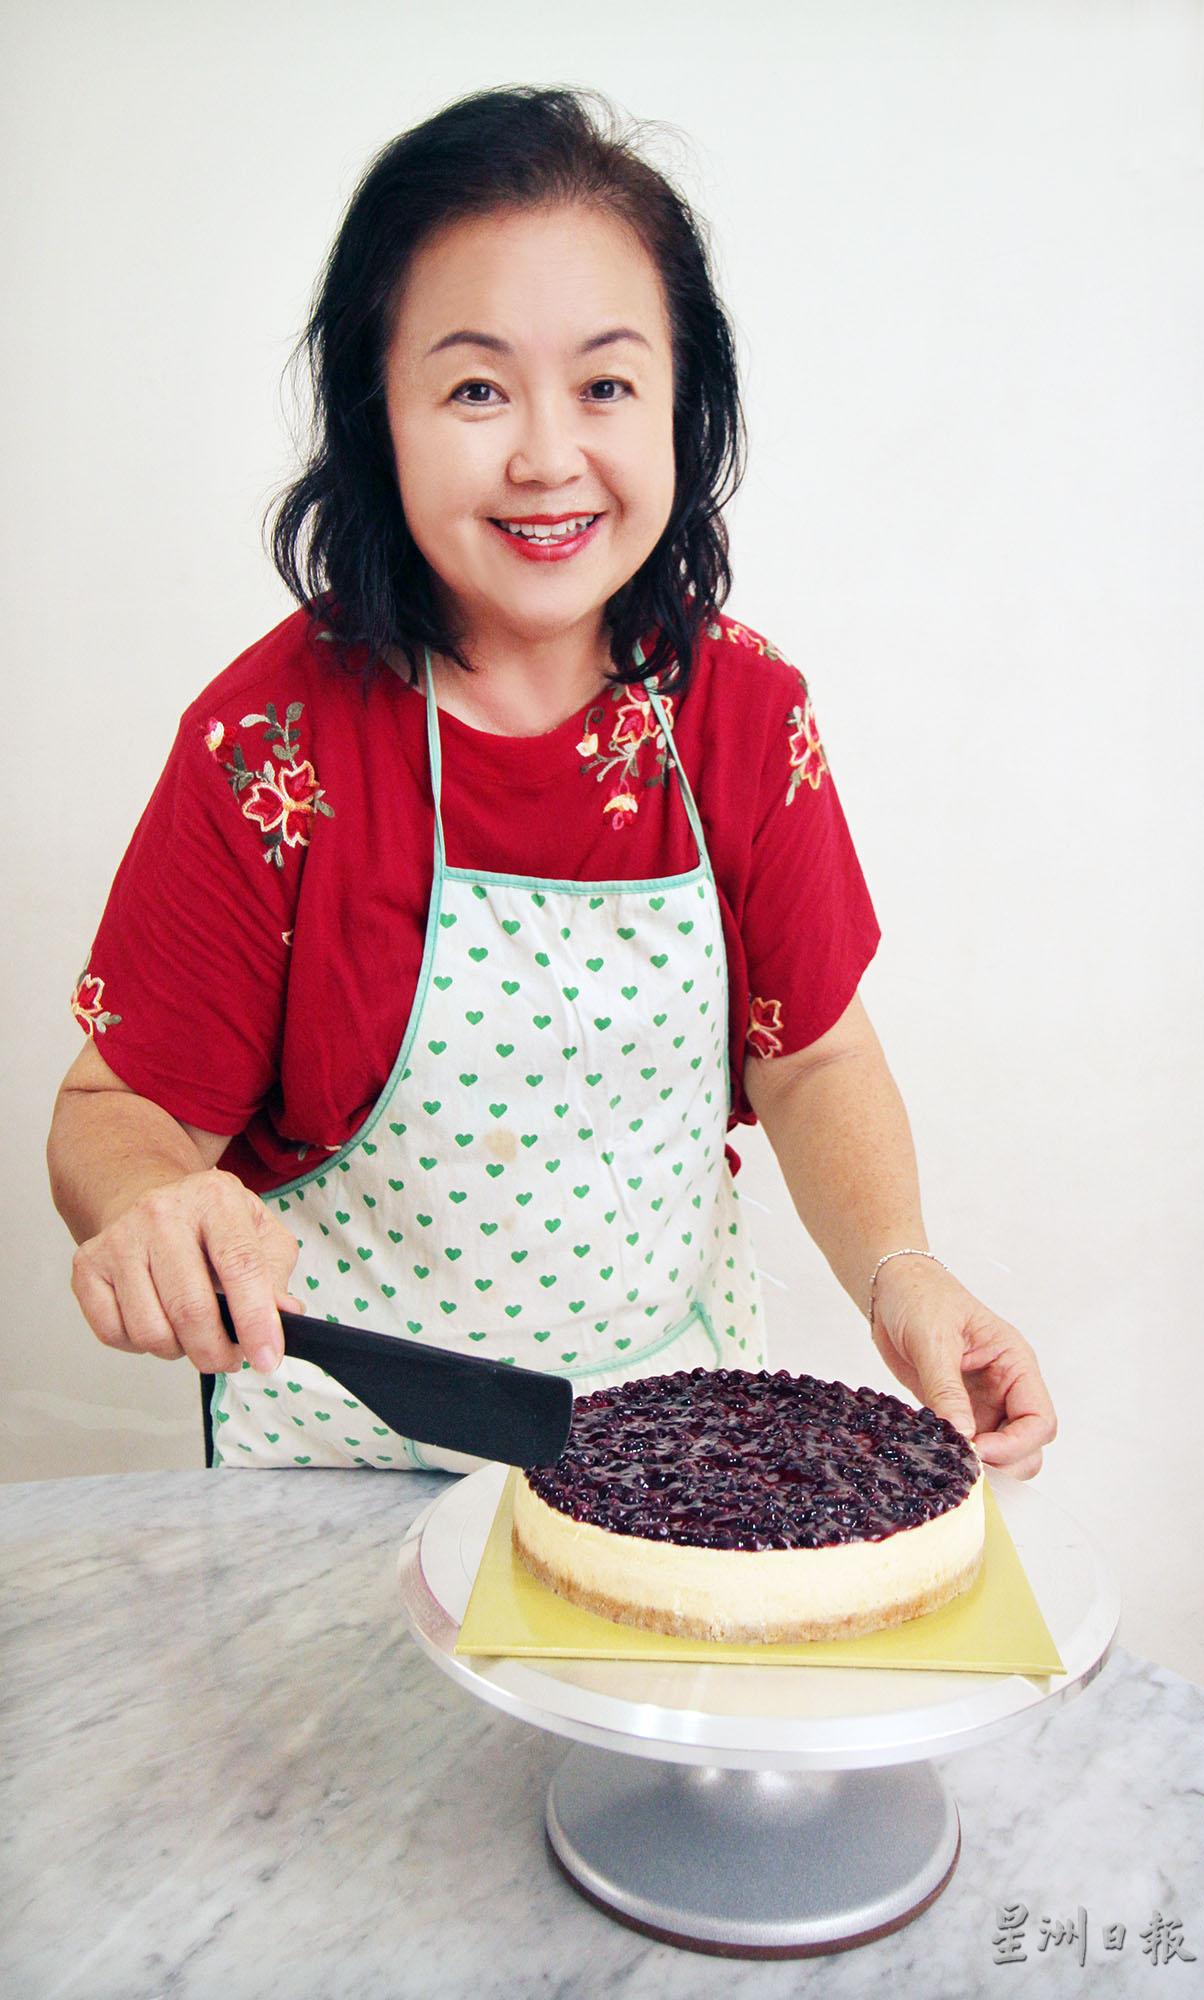 正职导游的叶金莲在疫情下大胆创业卖芝士蛋糕，作品获得顾客好评，让她很开心，有信心继续经营下去。